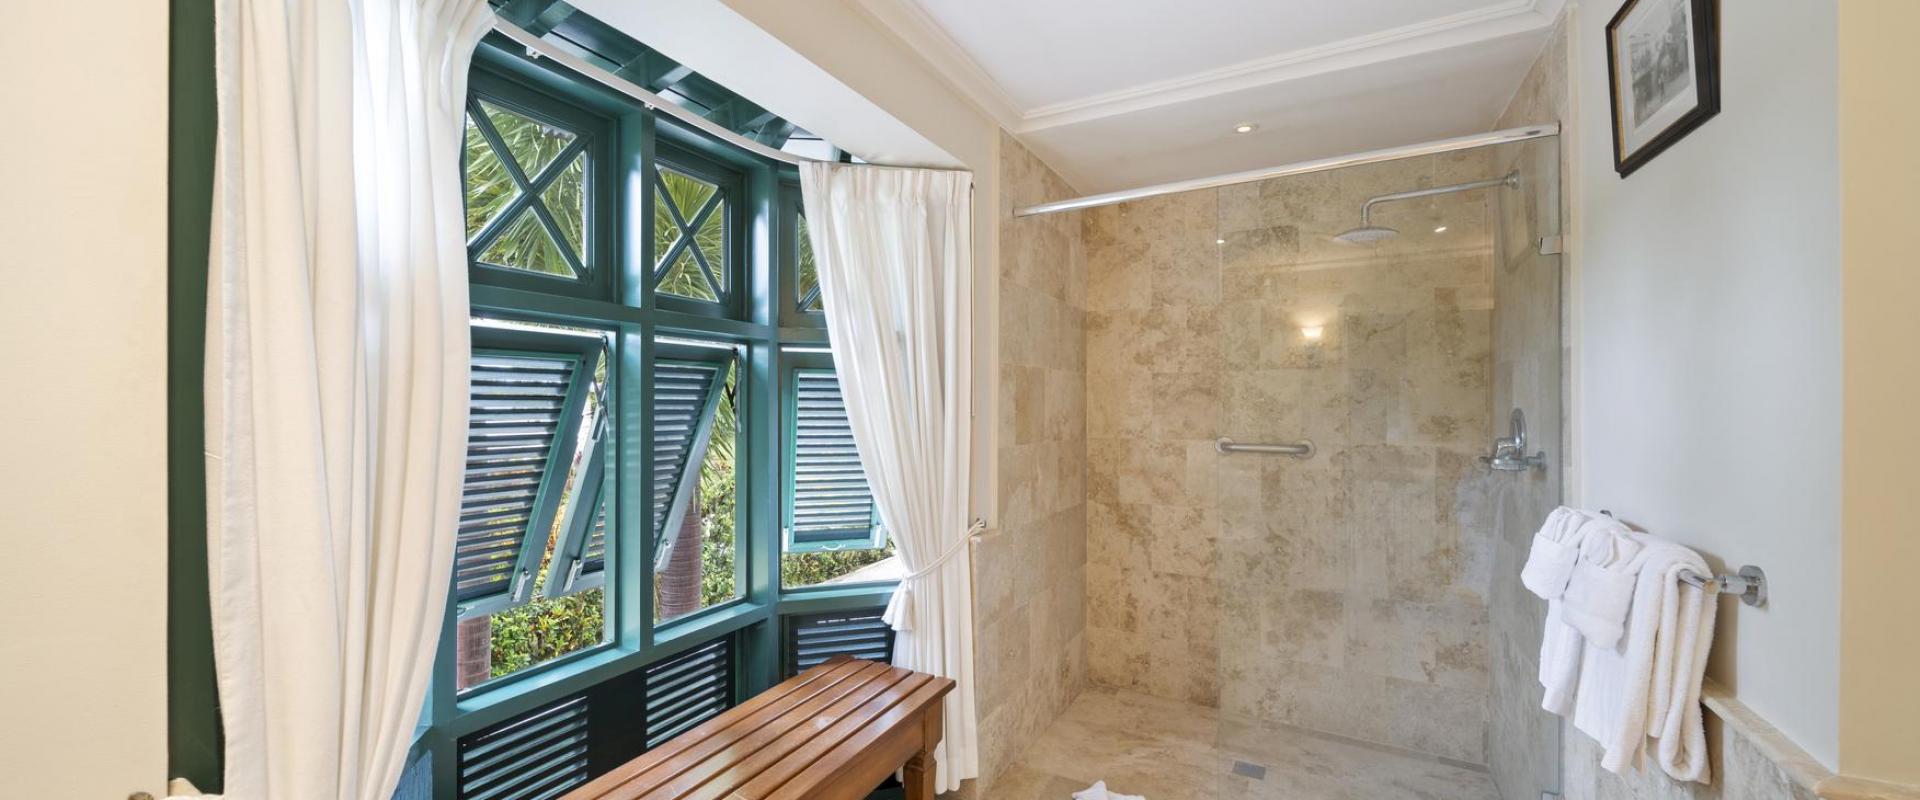 Hummingbird Villa Mullins Bay Barbados Bathroom 3 Shower